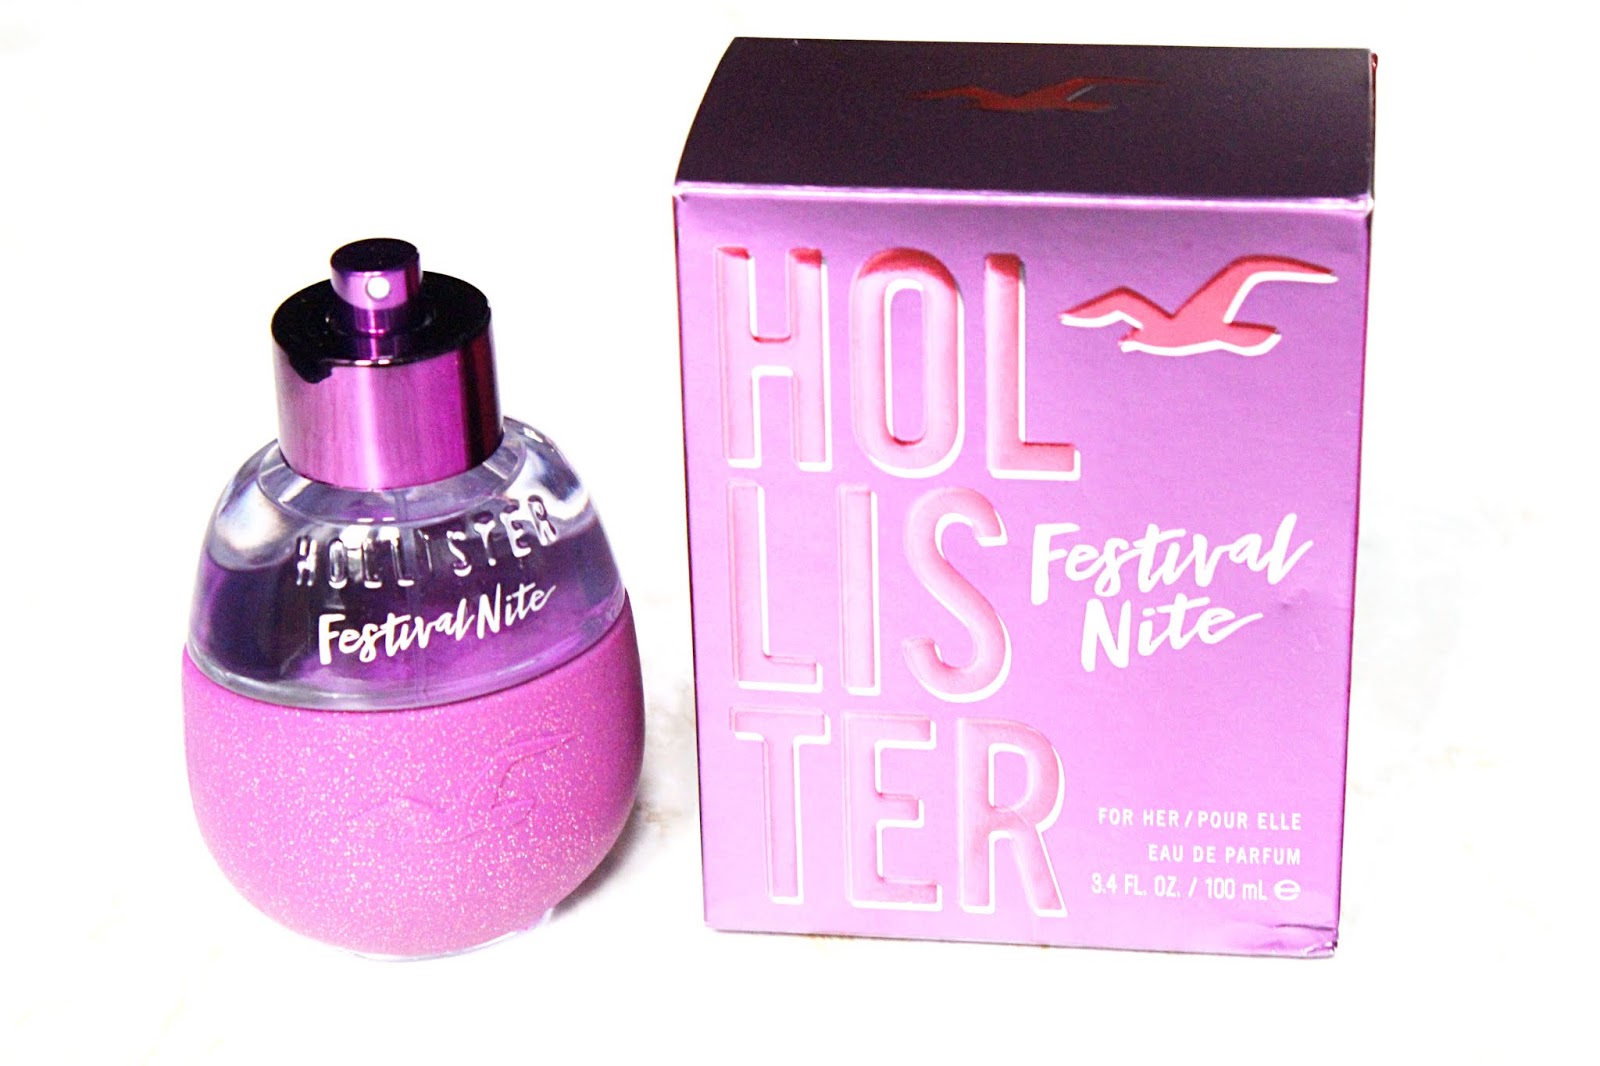 Hollister Festival Nite for Her Perfume 